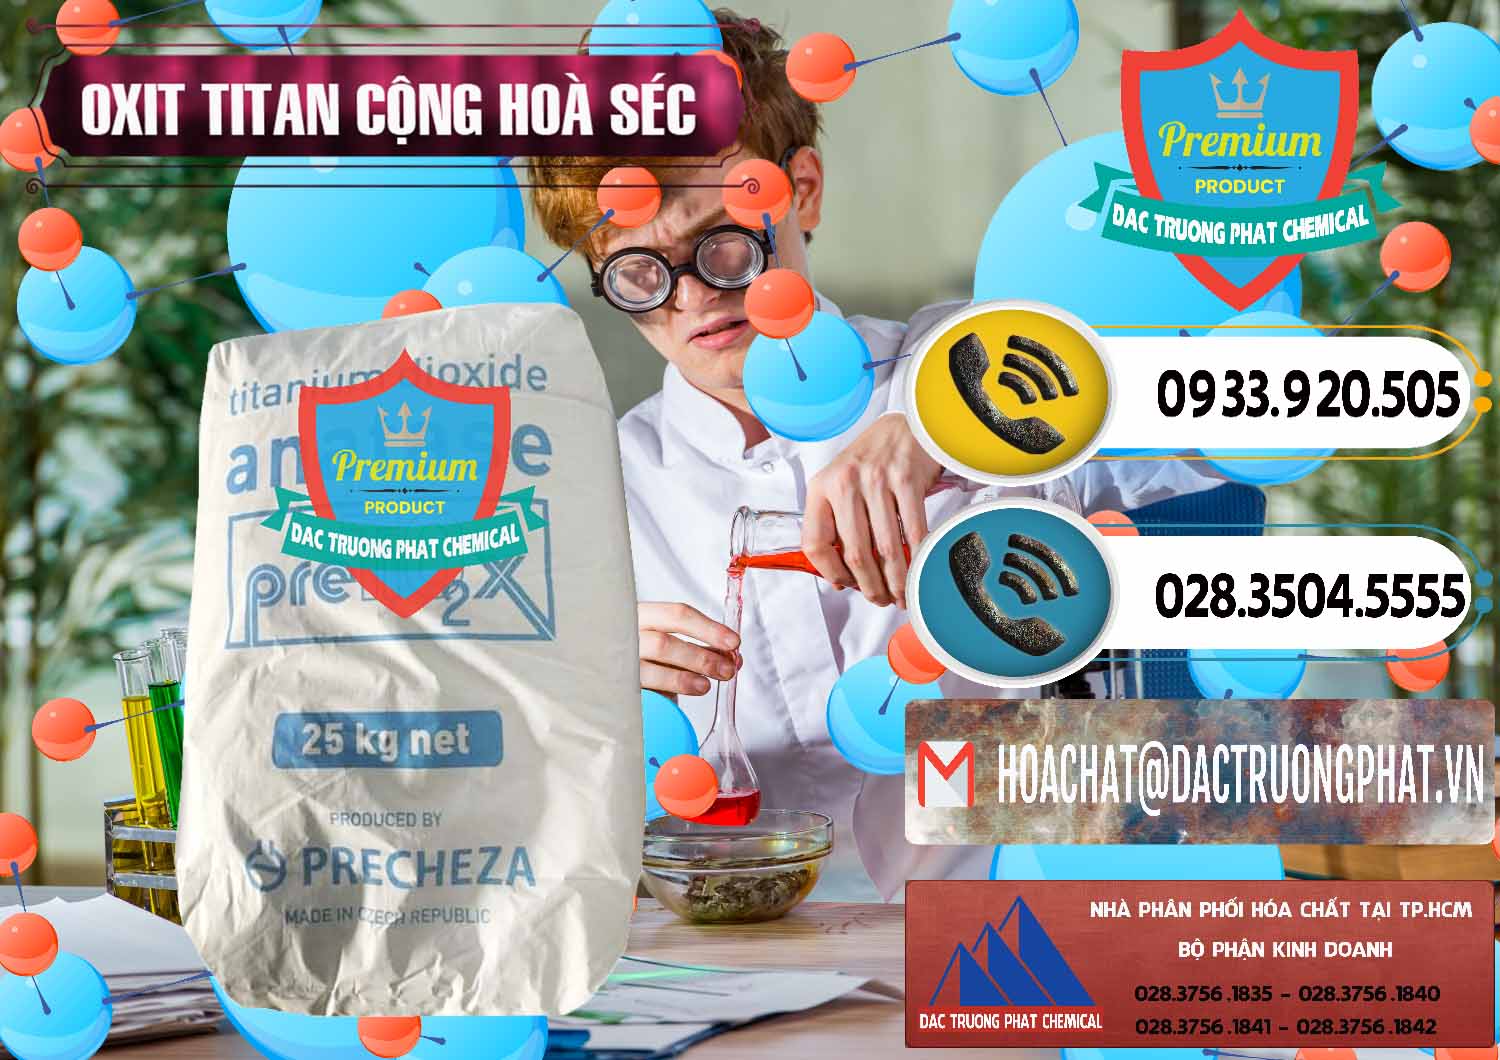 Công ty chuyên kinh doanh _ bán Oxit Titan KA100 – Tio2 Cộng Hòa Séc Czech Republic - 0407 - Chuyên nhập khẩu & phân phối hóa chất tại TP.HCM - hoachatdetnhuom.vn